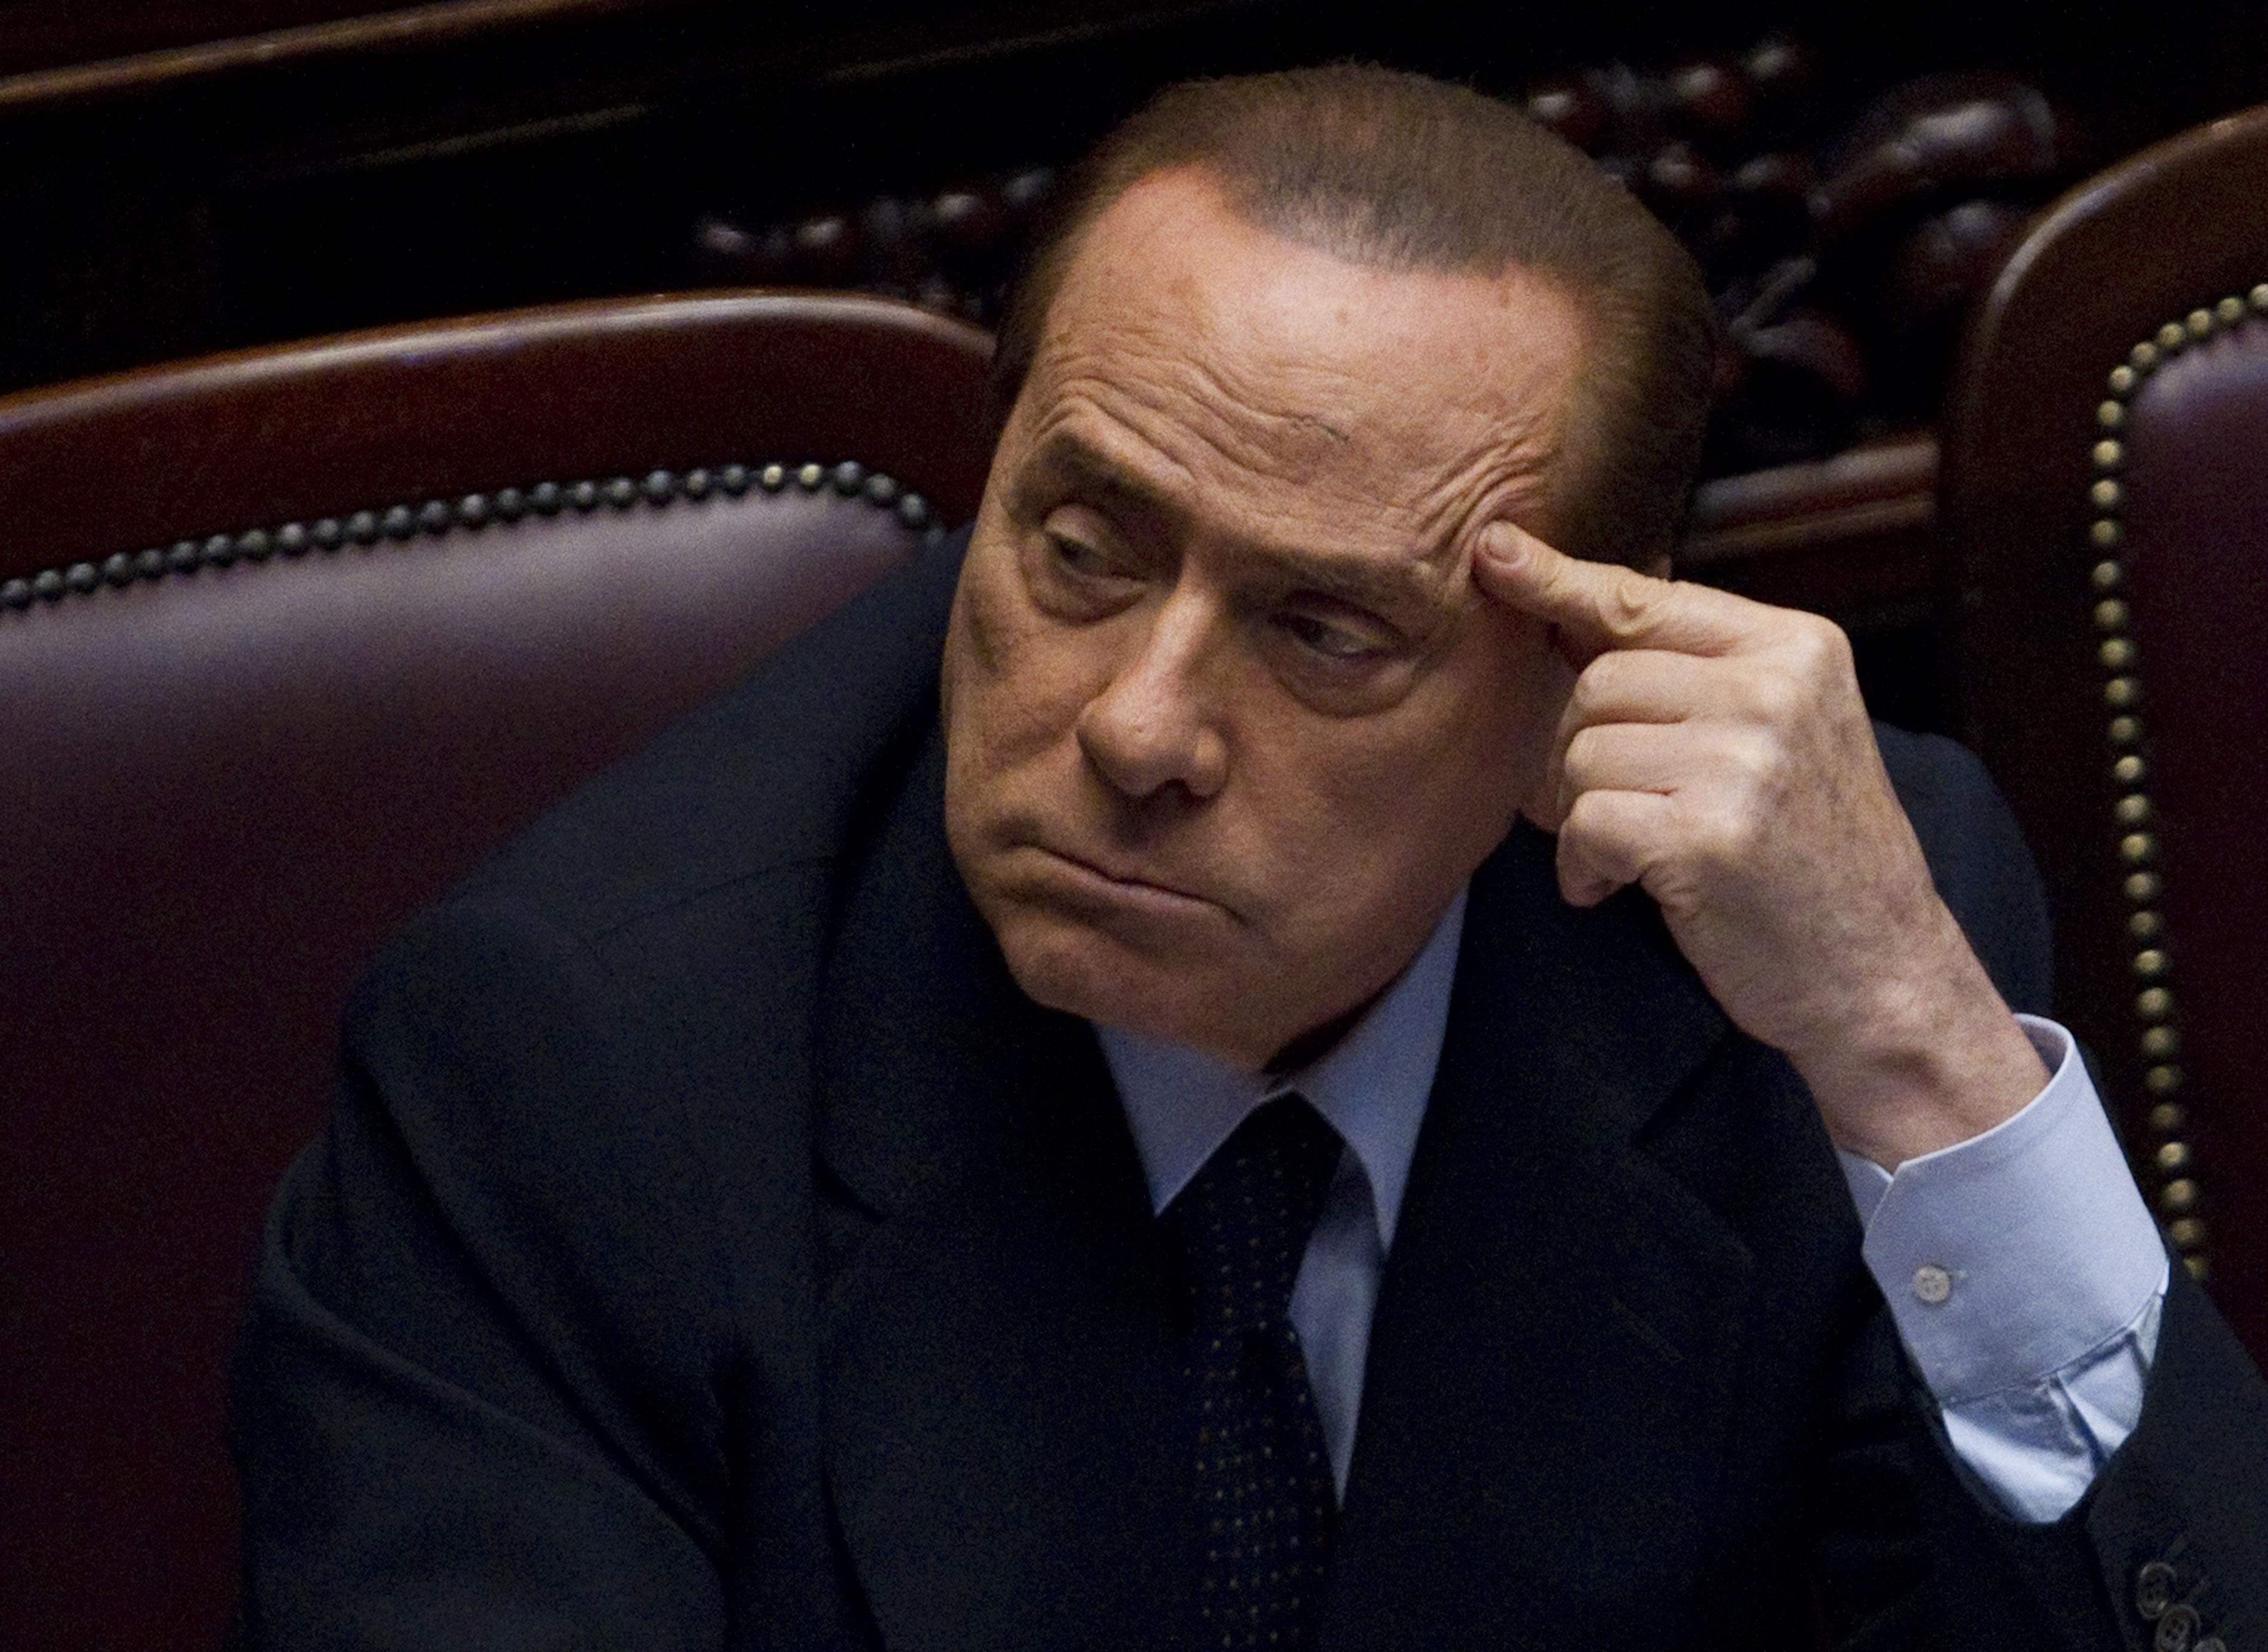 Sexualbrott, Köp av sexuell tjänst, Utpressning, Prostitution, Silvio Berlusconi, Politik, Brott och straff, Berlusconi, Italien, Sex- och samlevnad